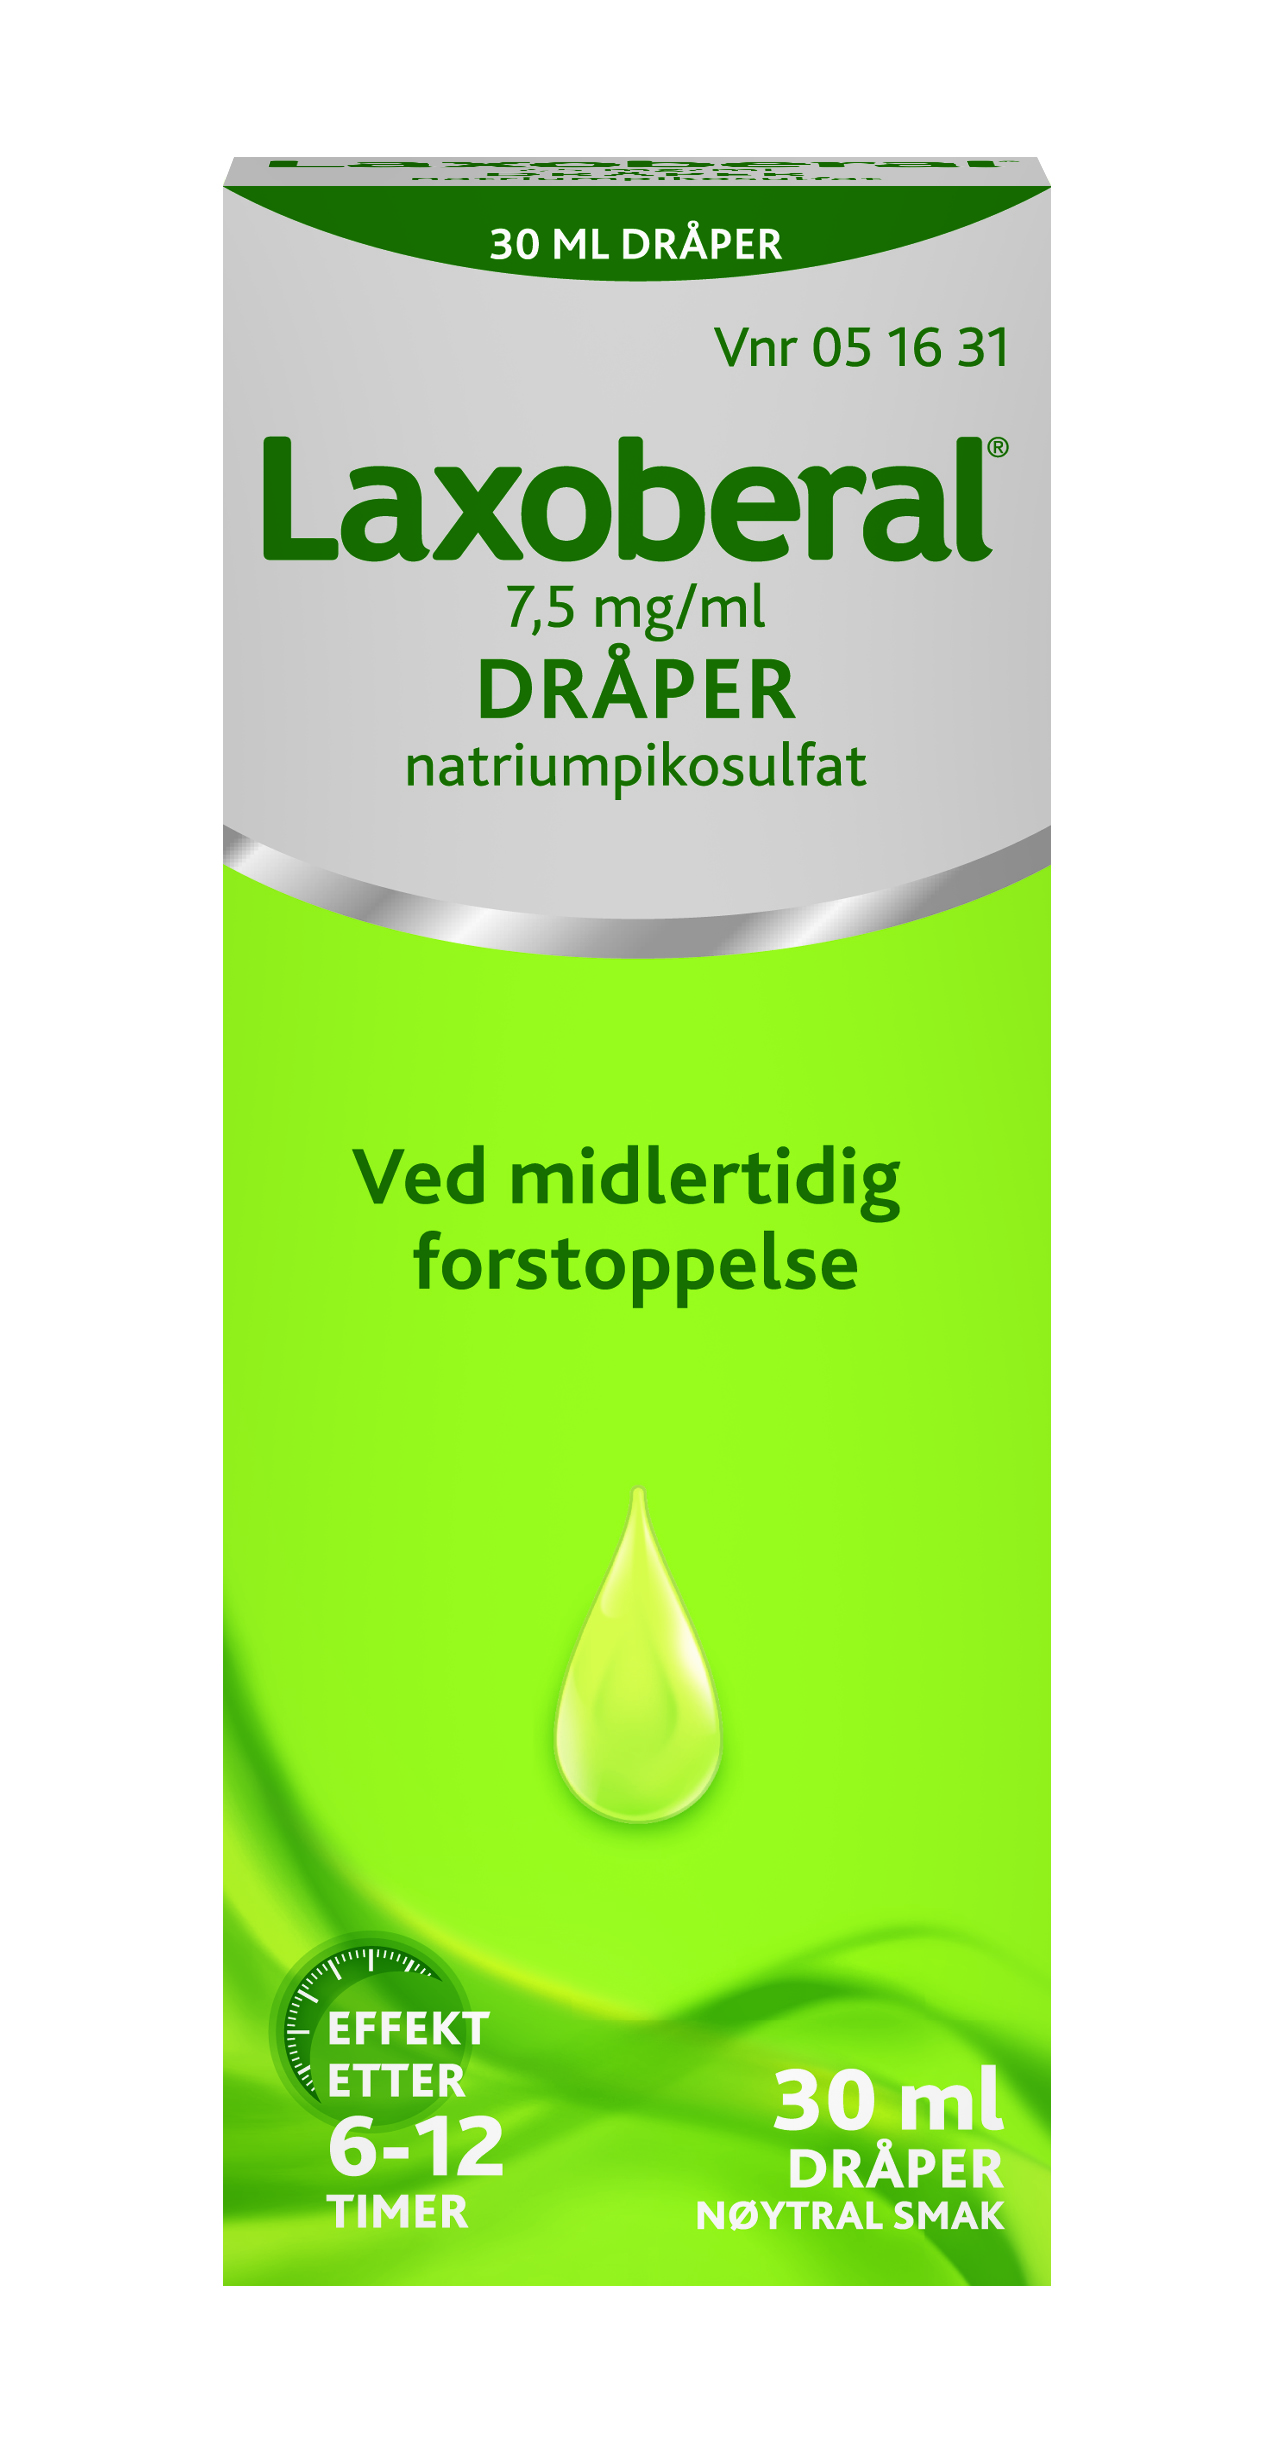 Laxoberal Dråper 7,5mg/ml, 30 ml.